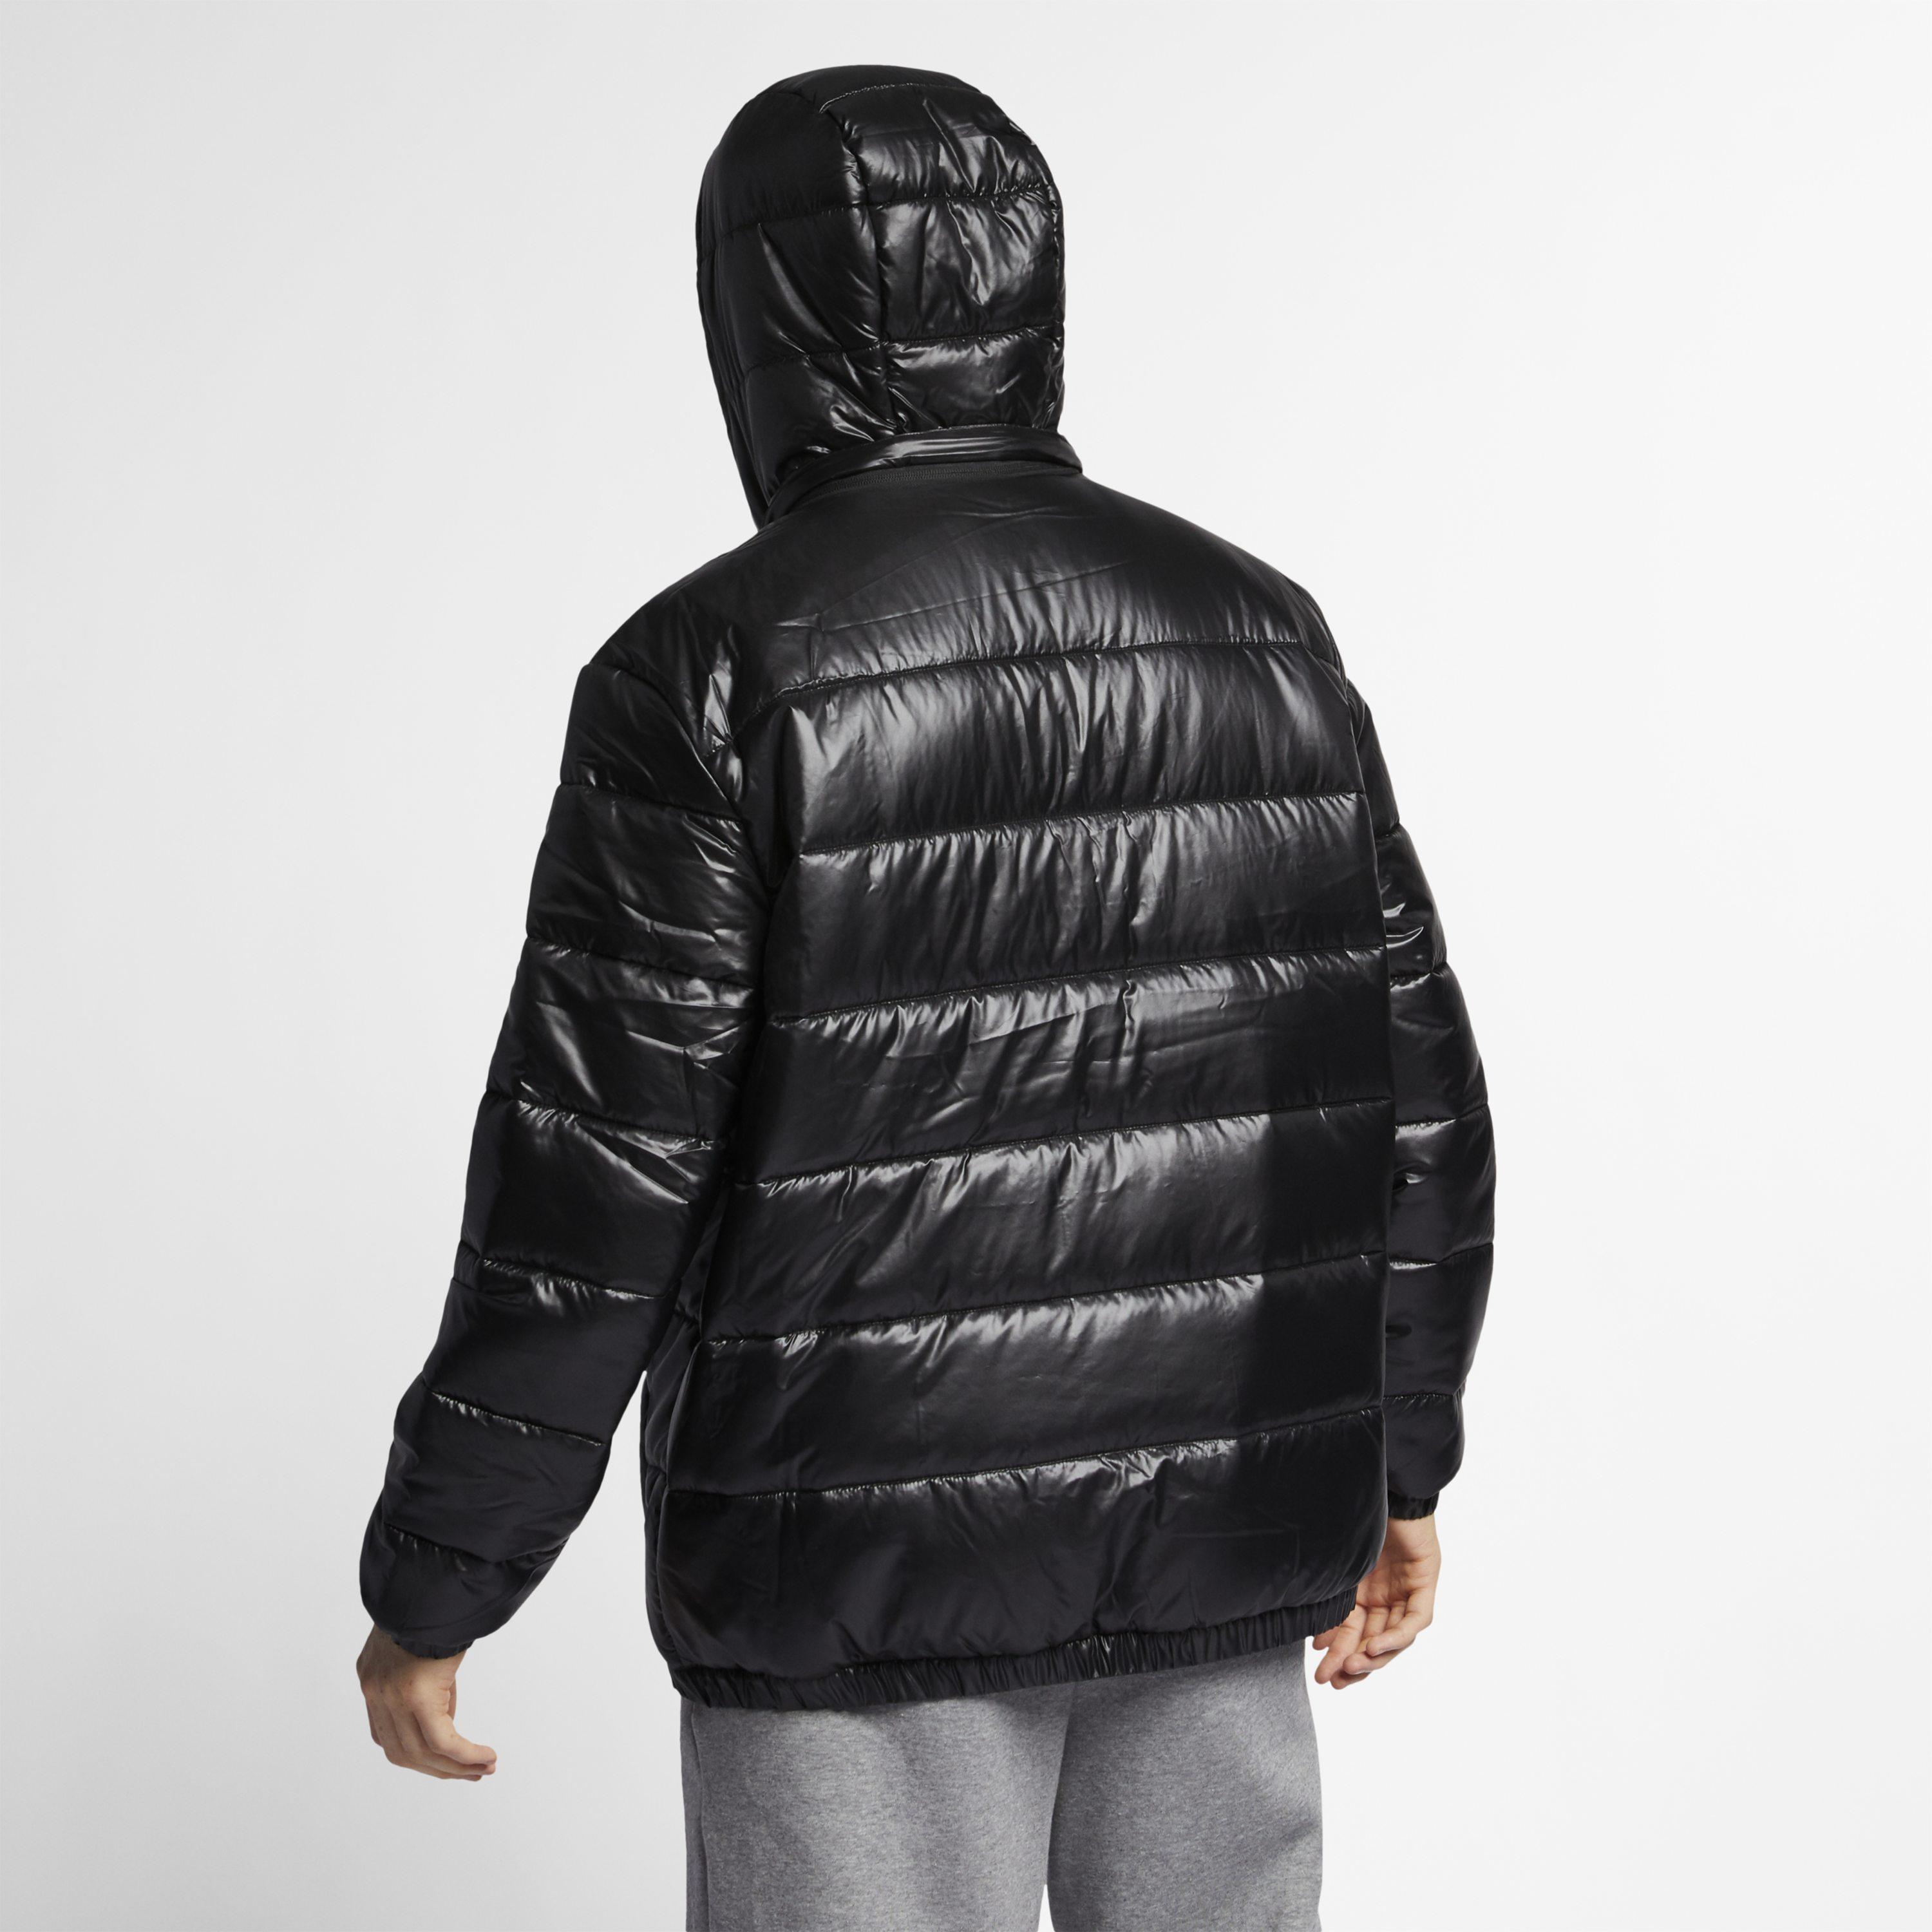 Nike Synthetic Jordan Jumpman Puffer Jacket in Black for Men - Lyst